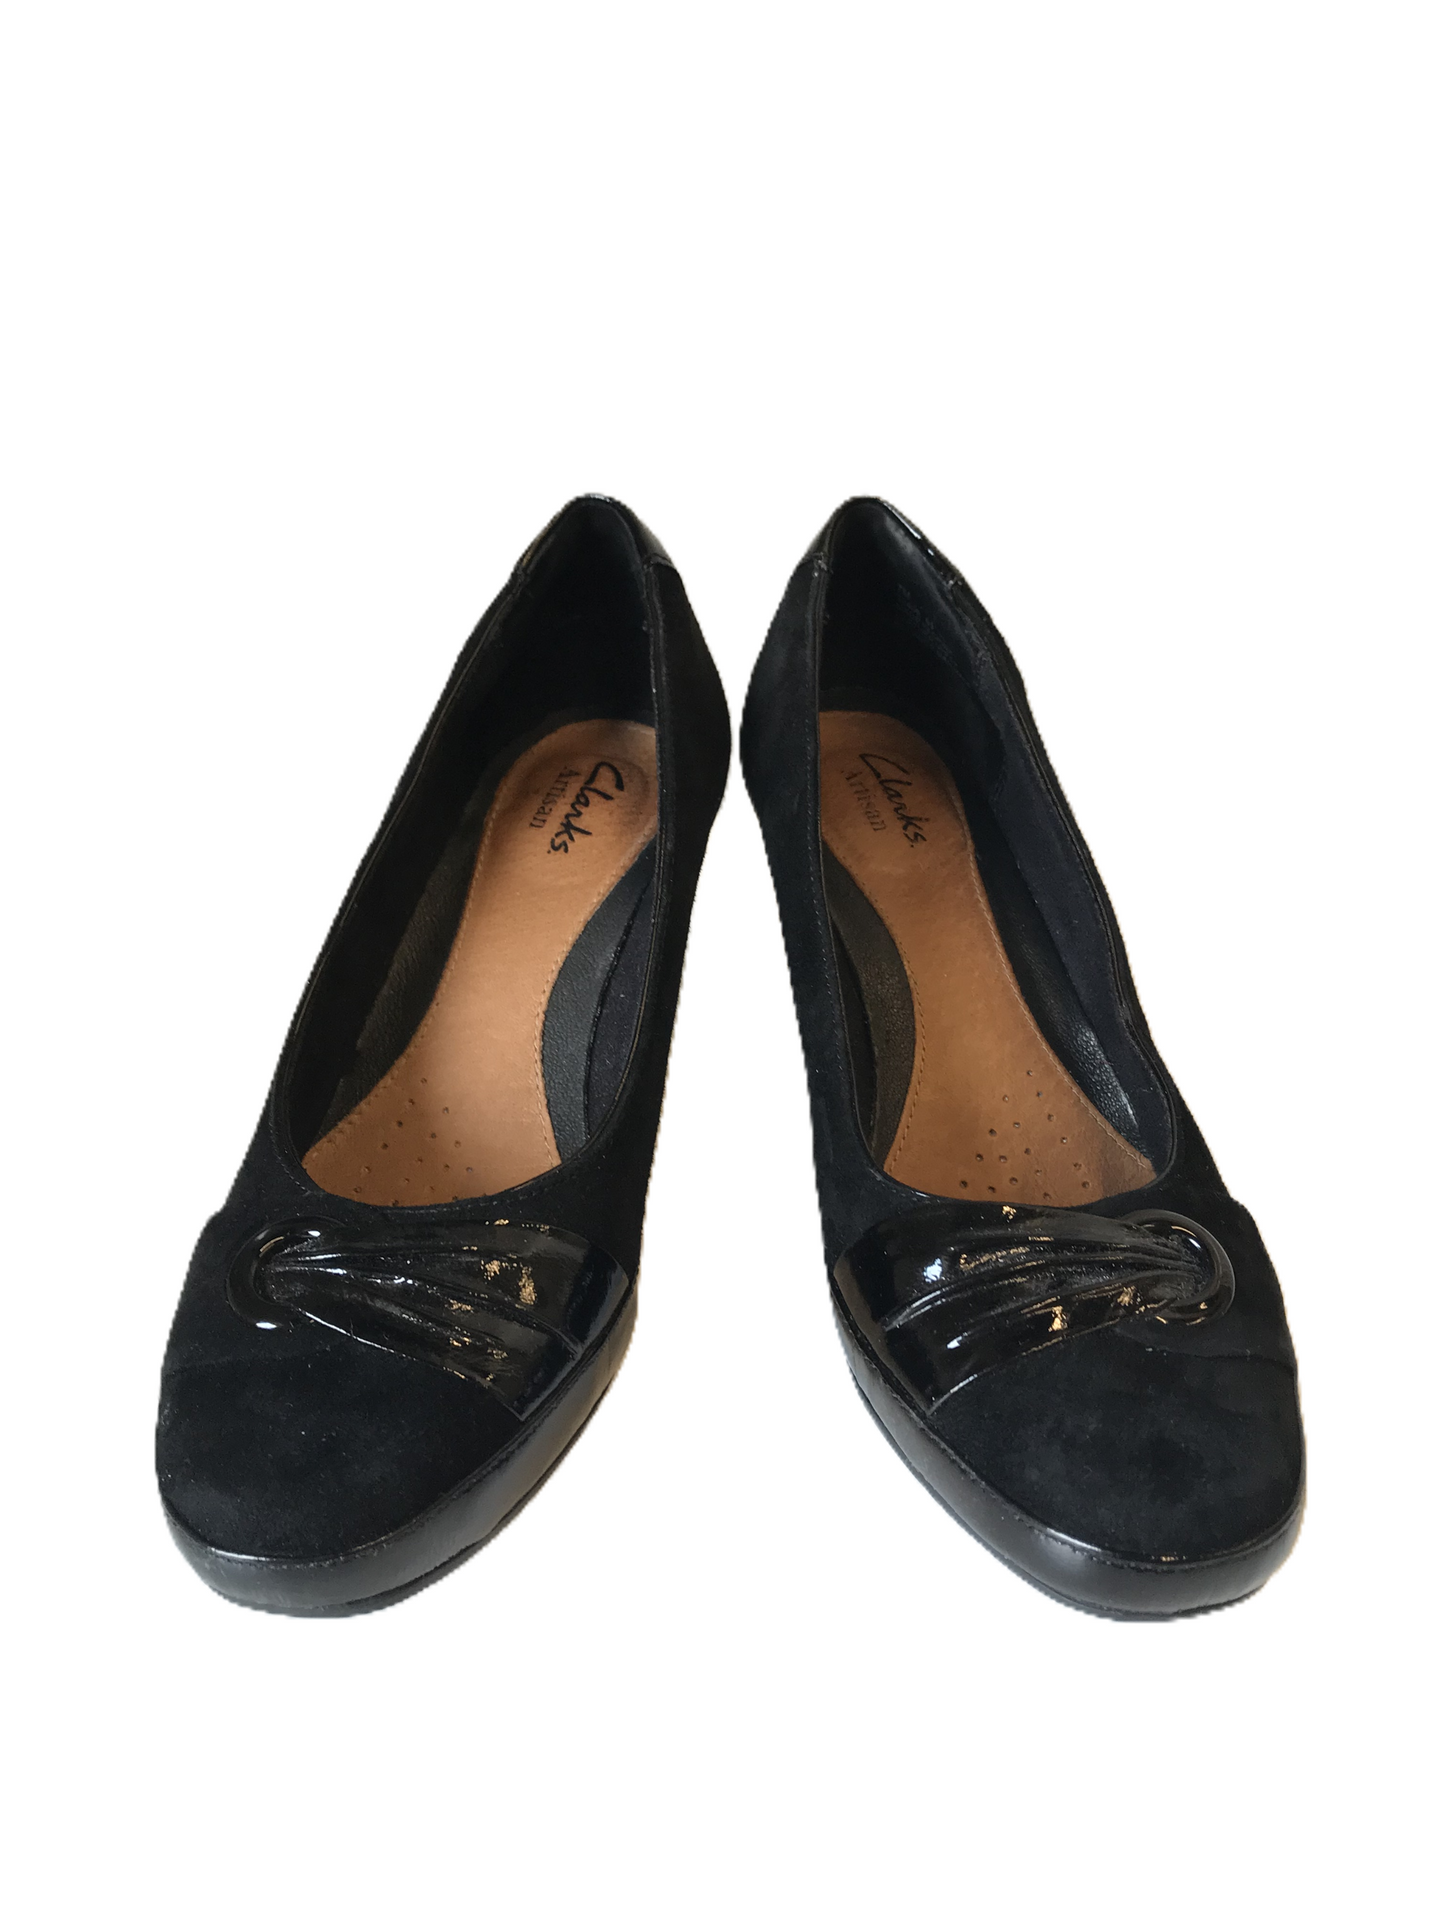 Black Shoes Heels Kitten By Clarks, Size: 7